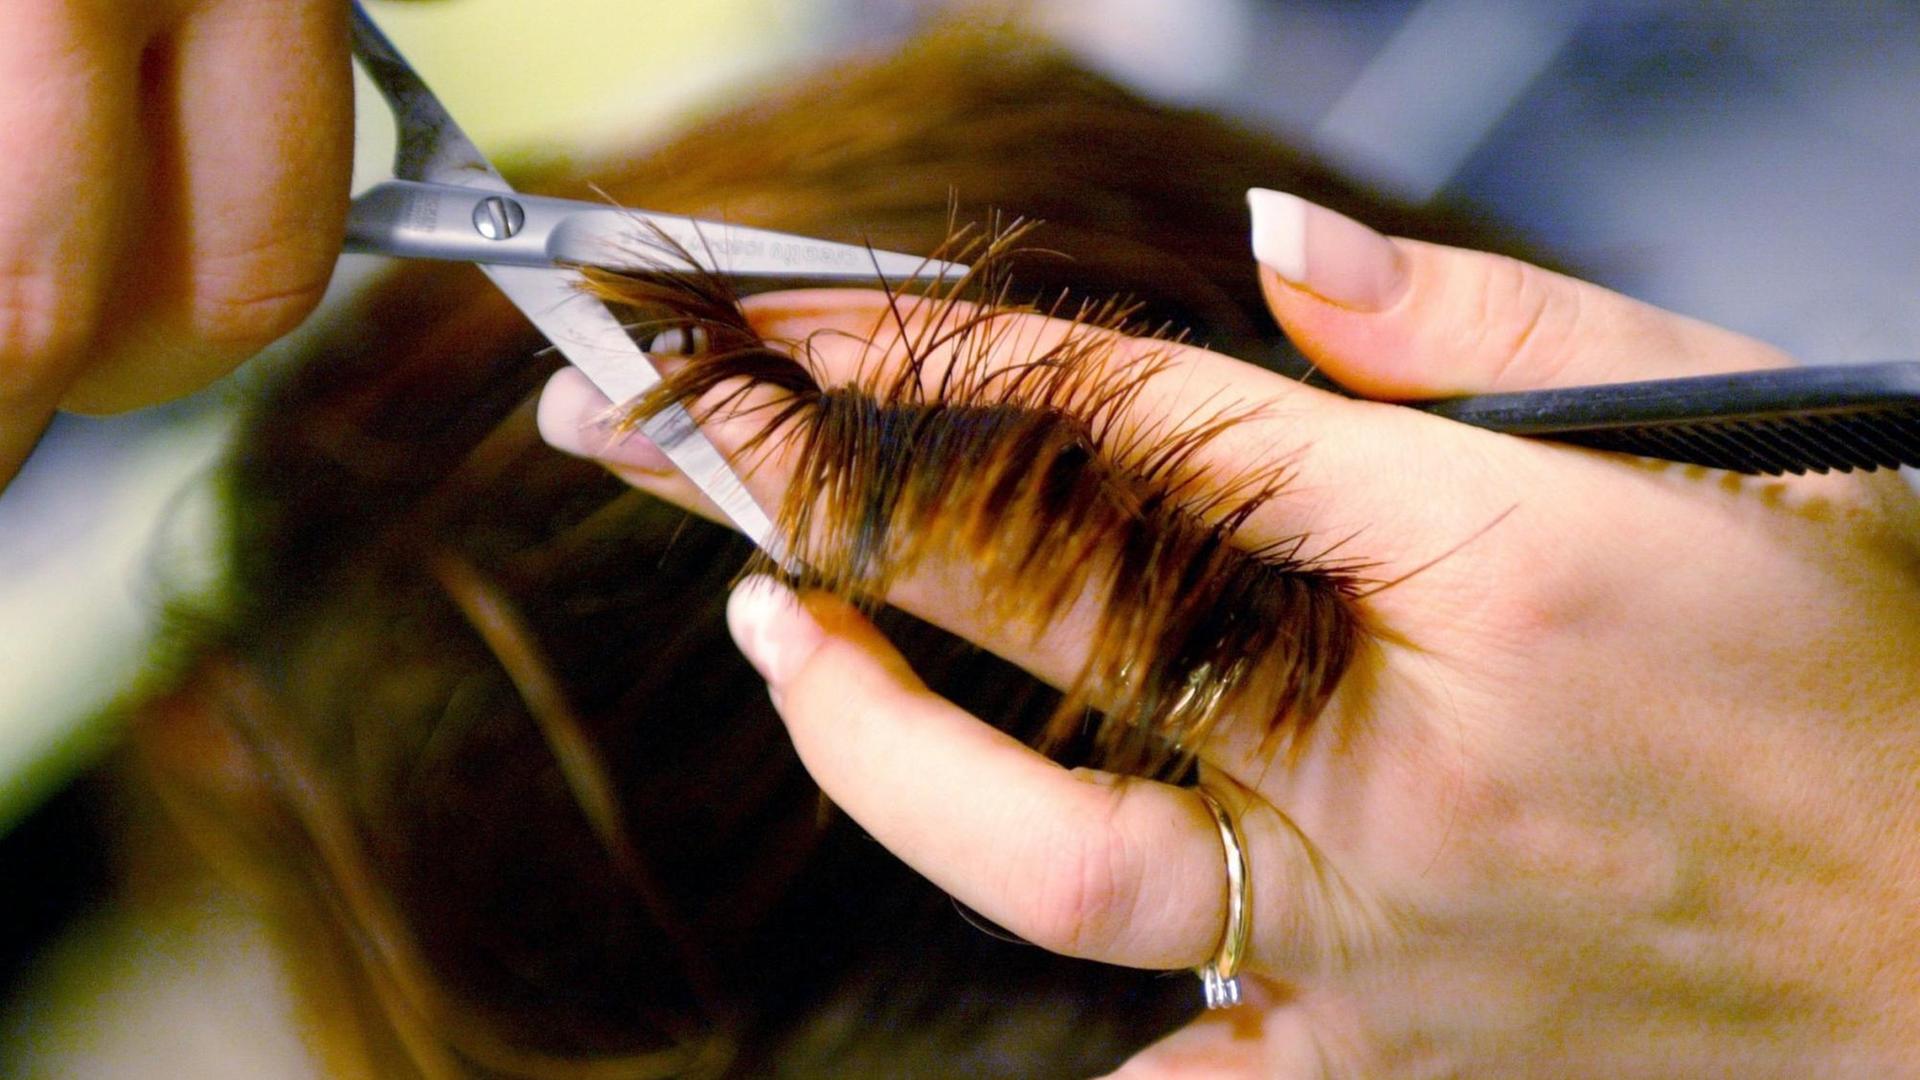 Einer jungen Frau werden in einem Friseursalon mit einer Schere die Haare geschnitten